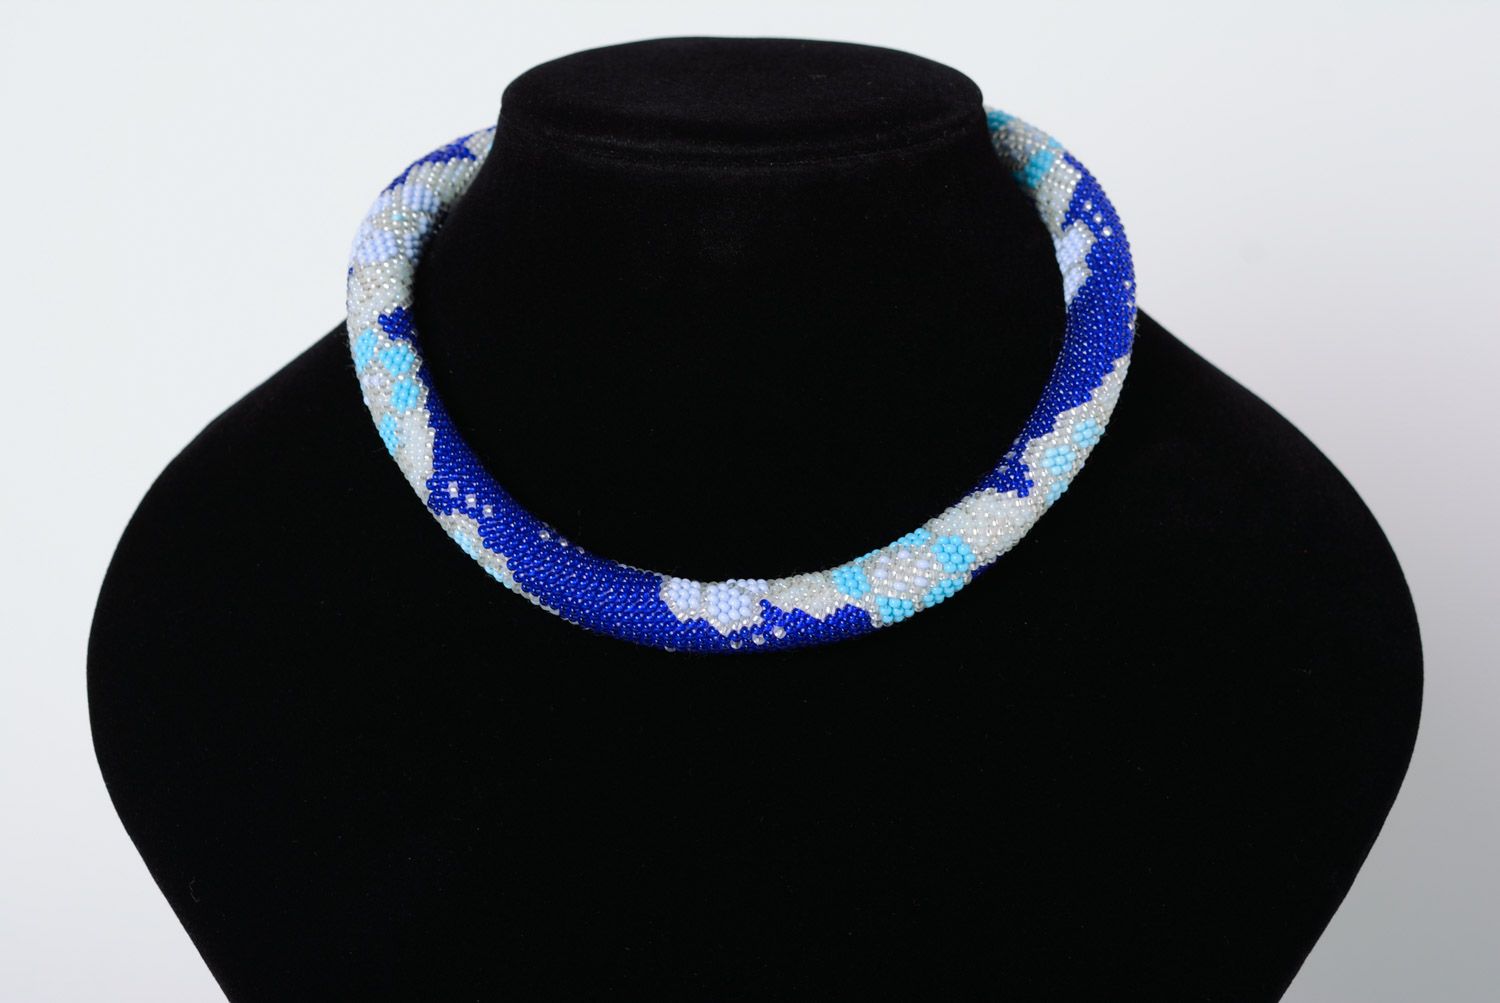 Жгут из бисера плетеный вручную сине голубой короткий с регулируемым размером фото 1